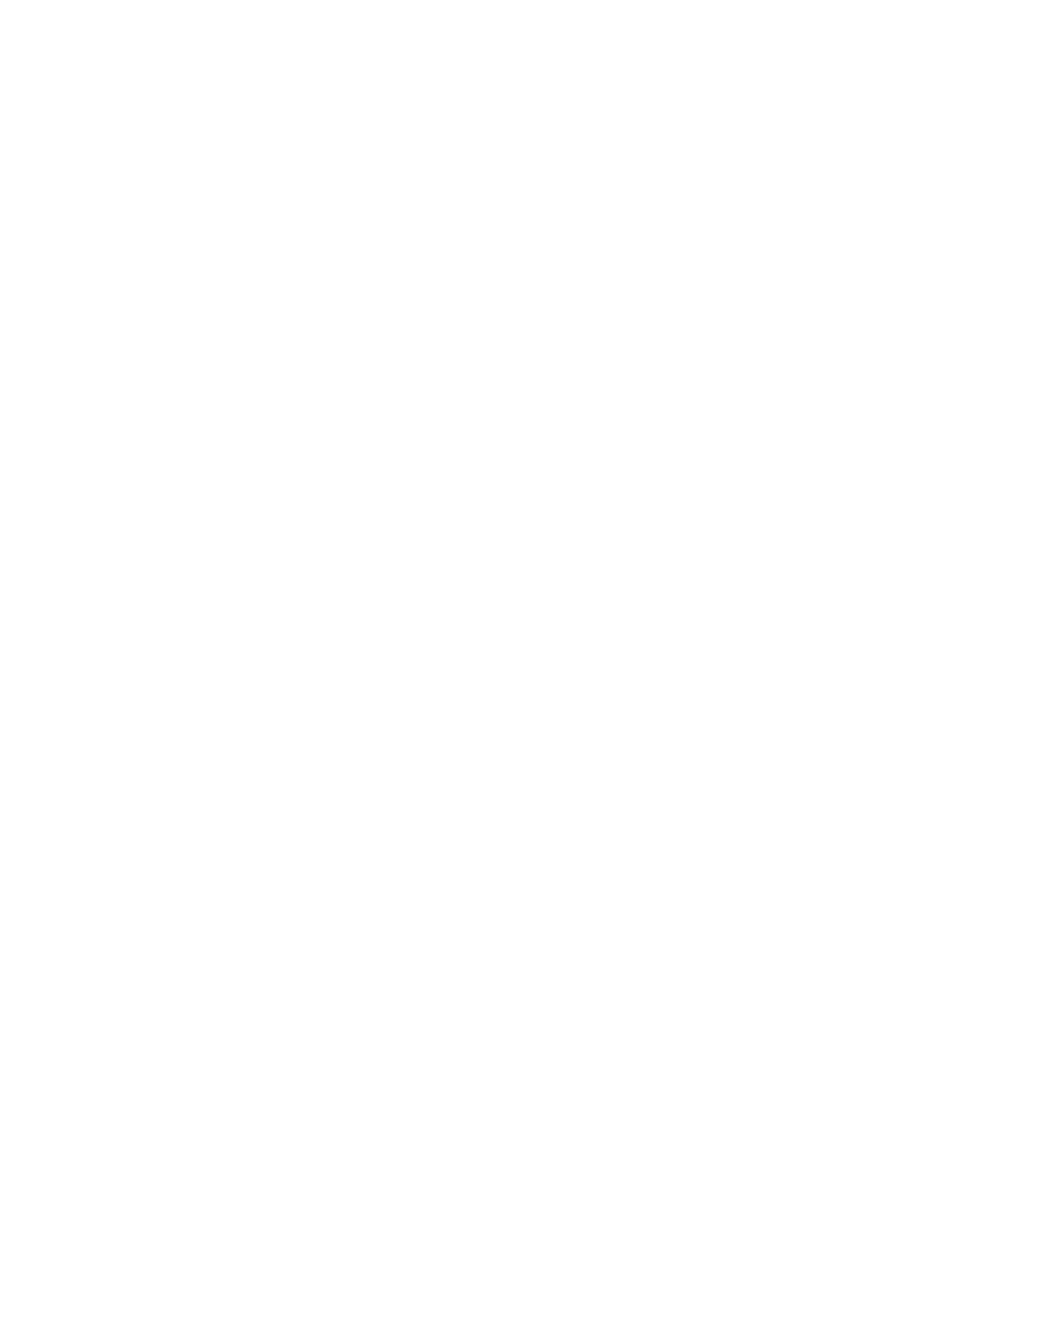 Logo Plan B